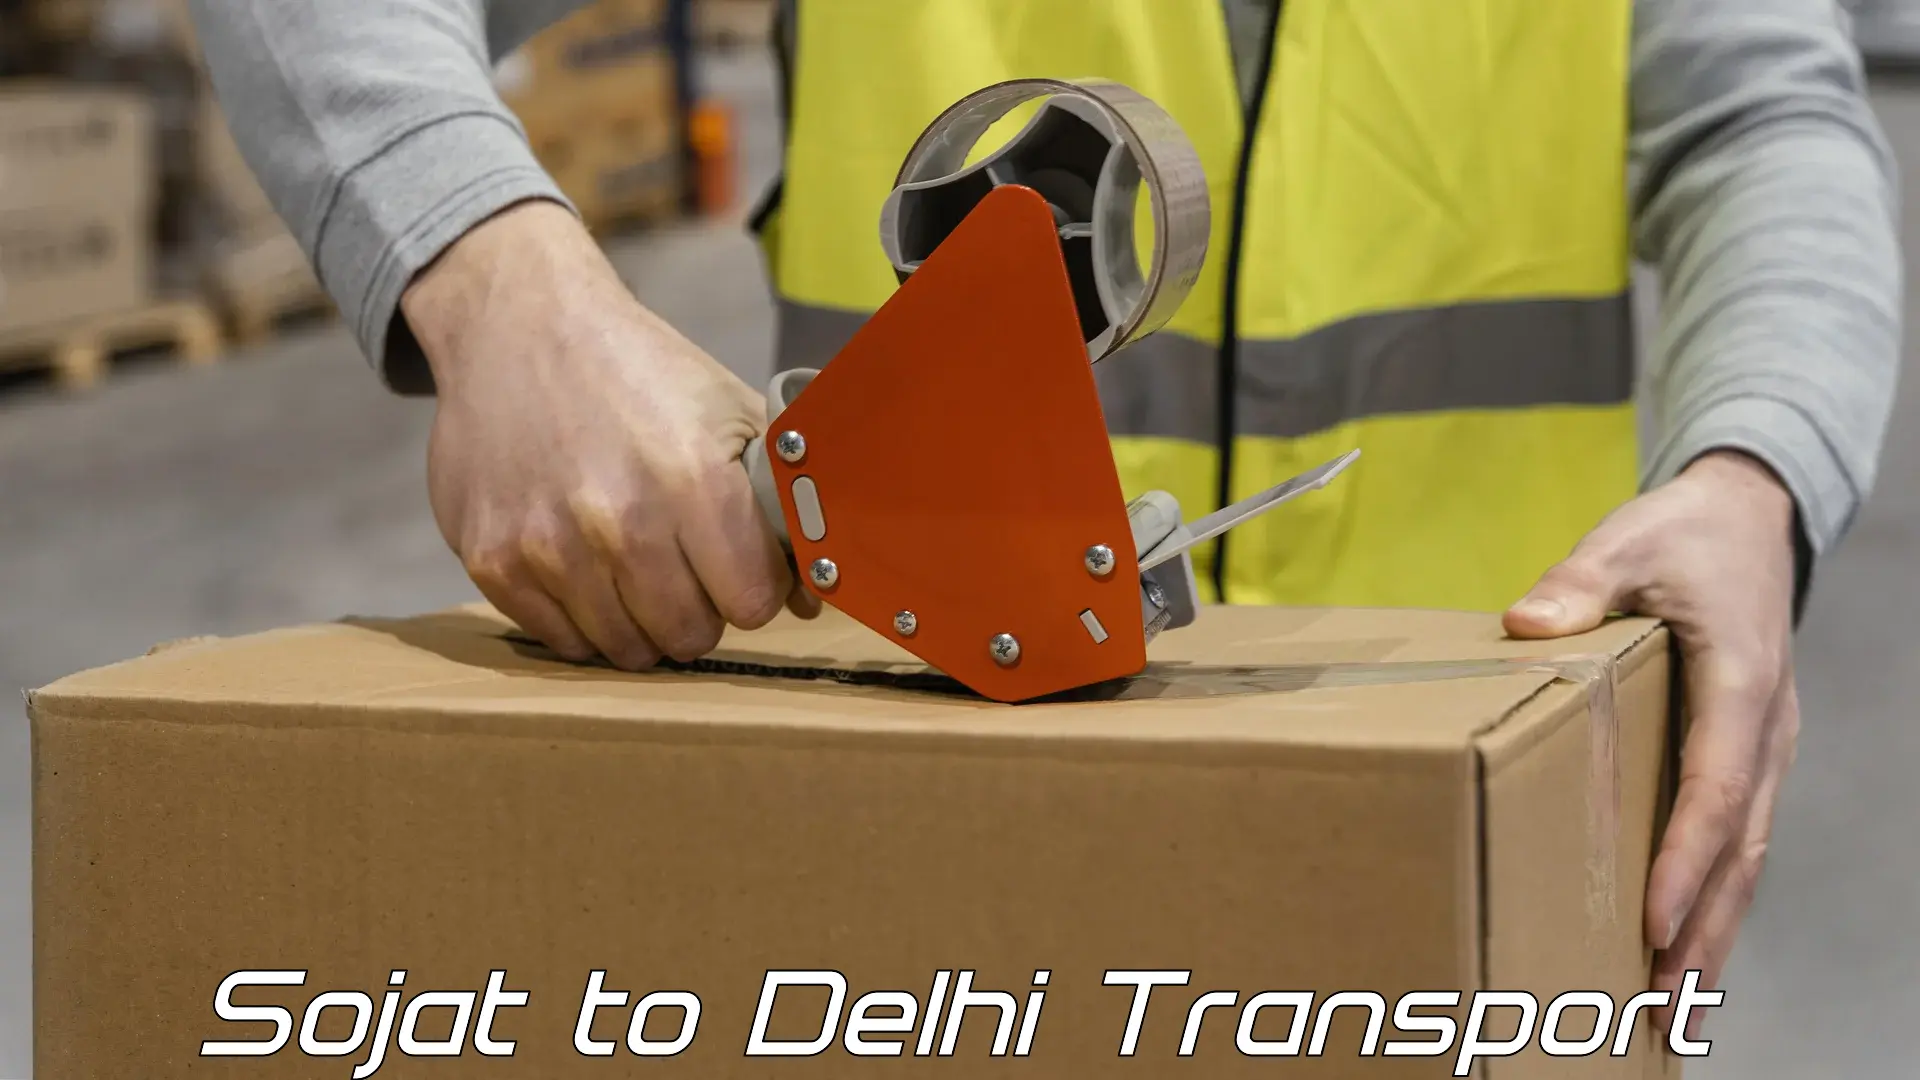 Shipping partner Sojat to East Delhi